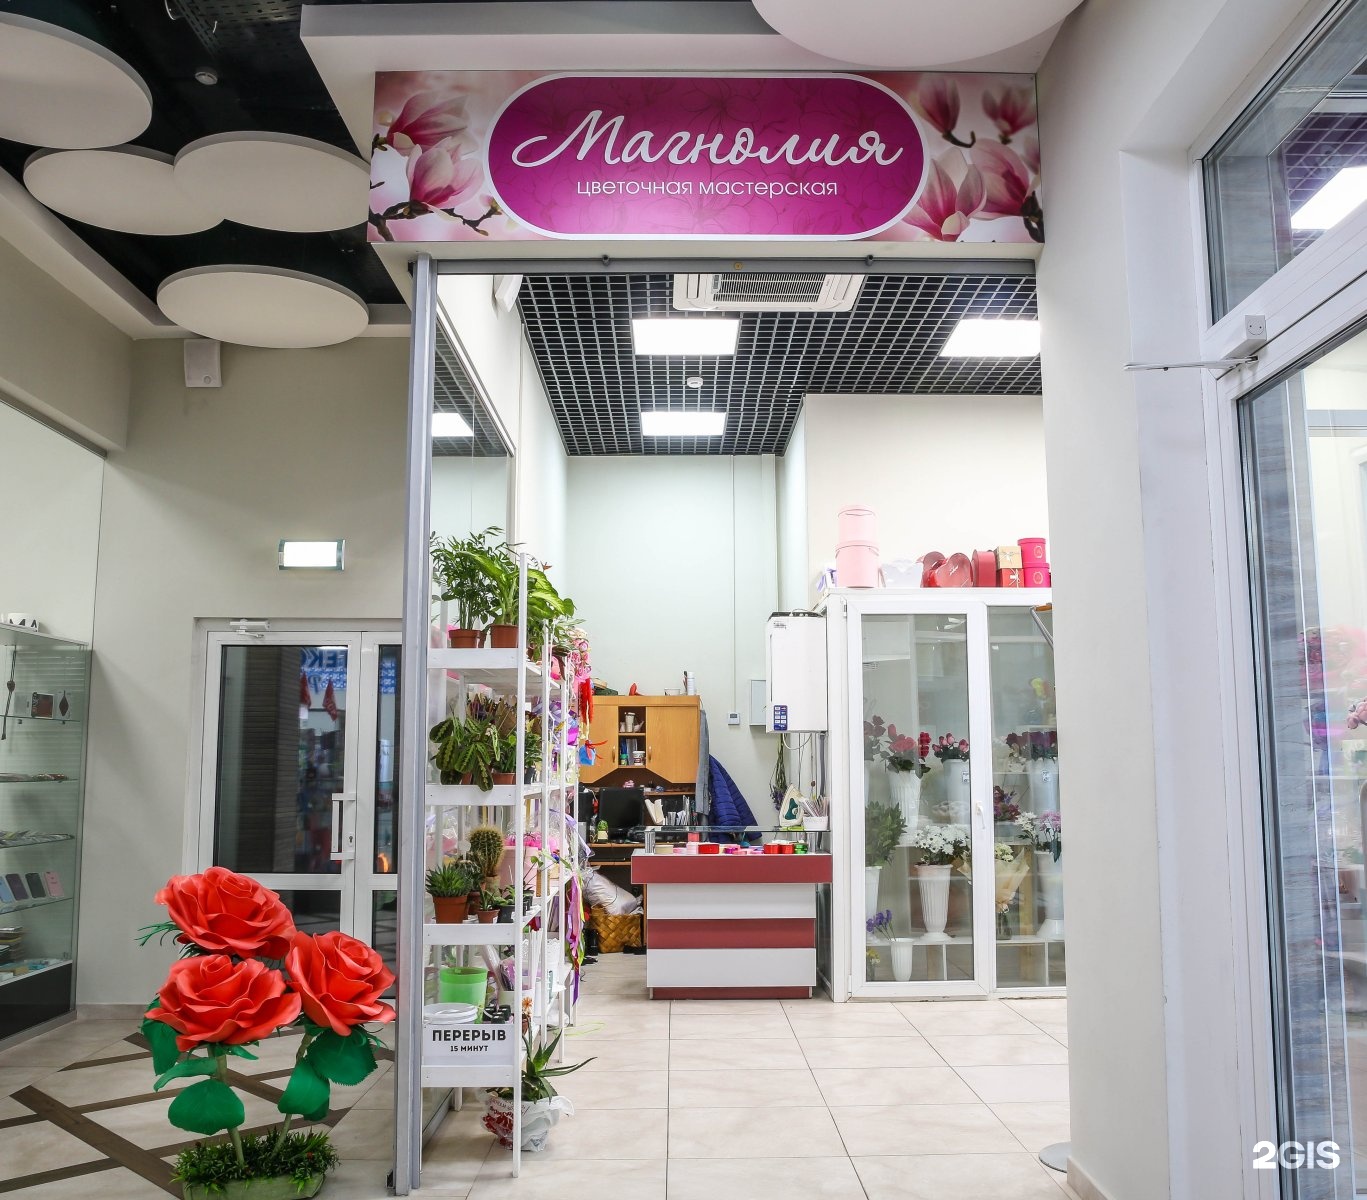 Цветочный магазин улан удэ. Название цветочного магазина. Название магазина цветов. Названия магазина с цветами. Название салона цветов.